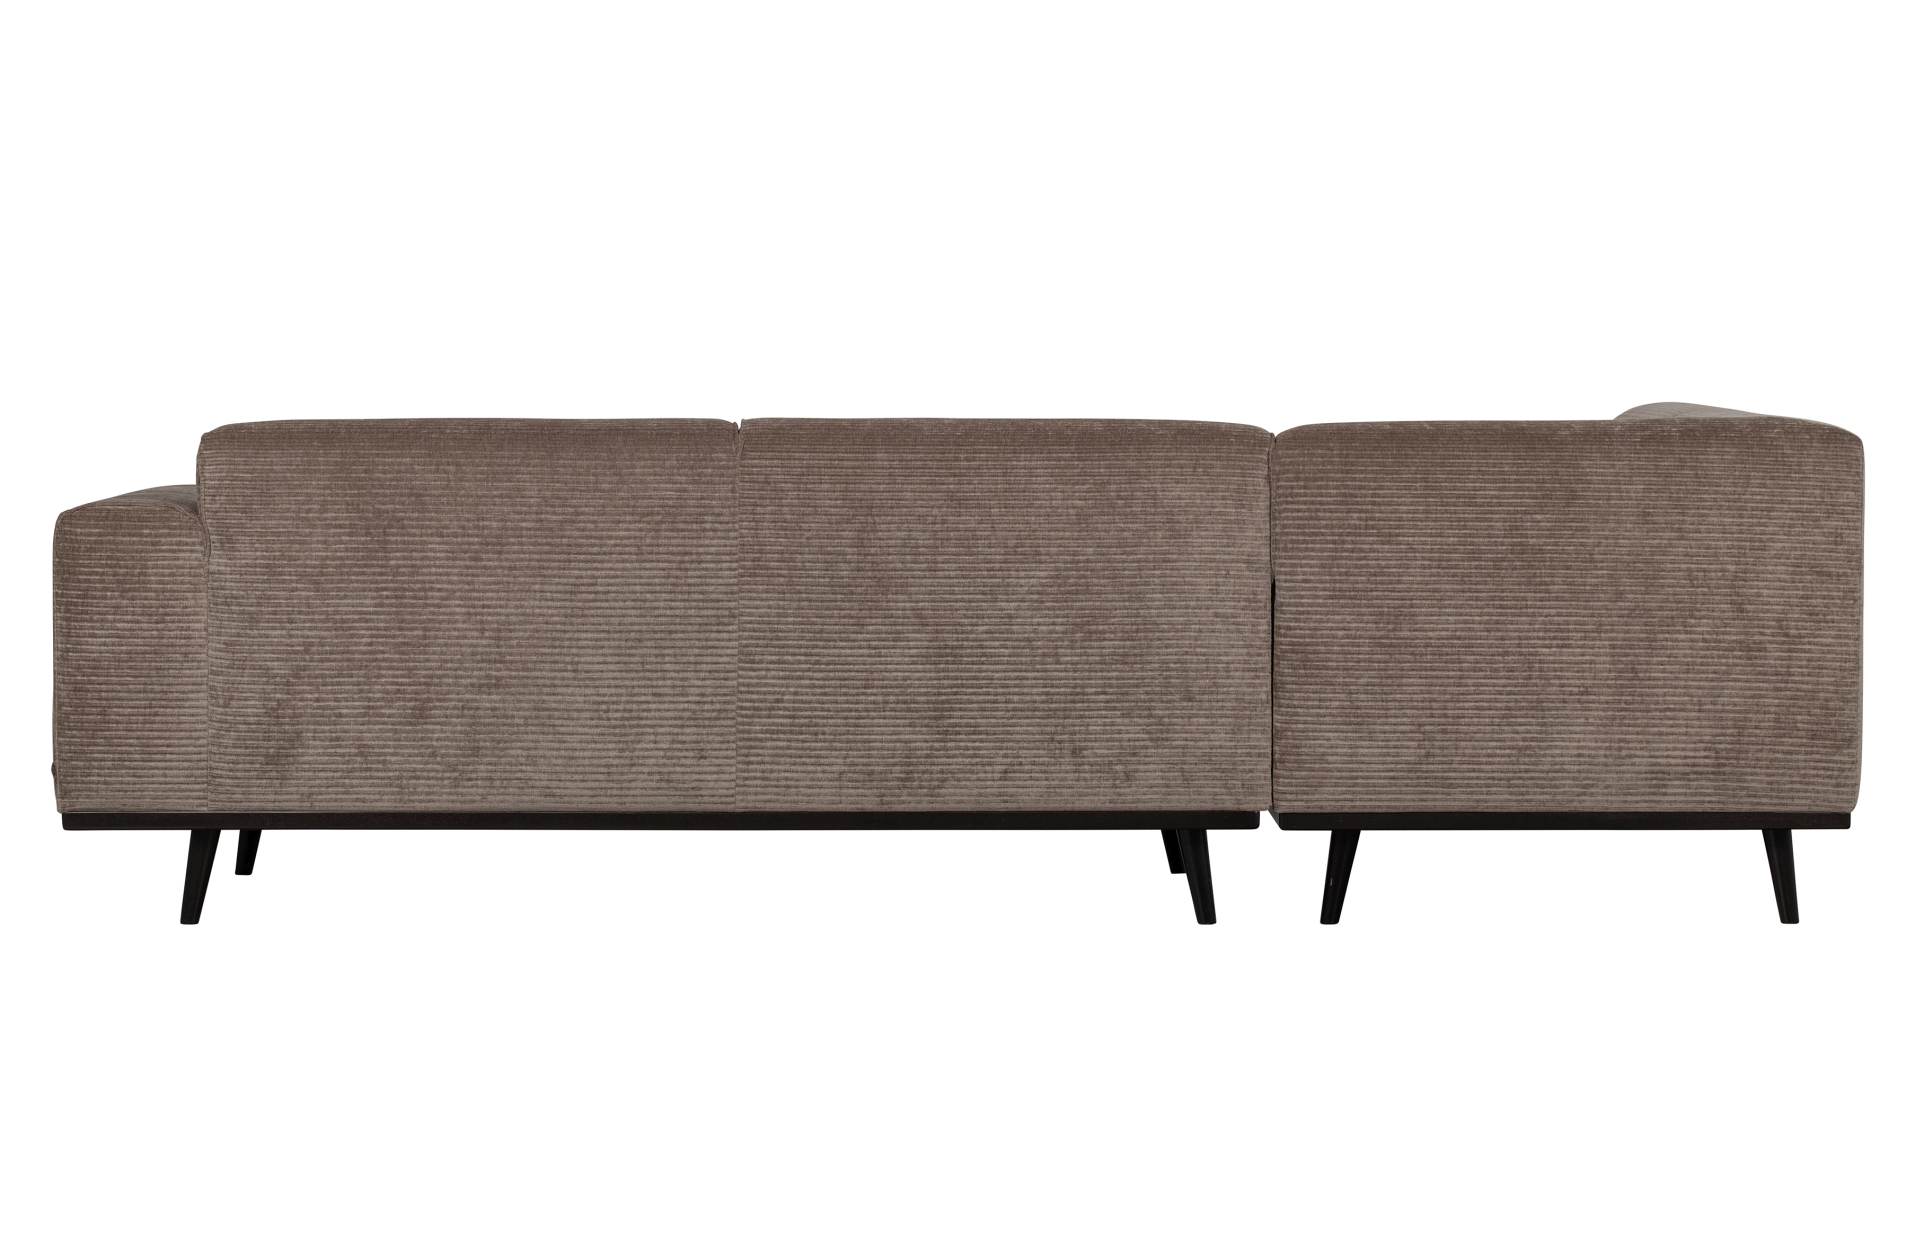 Das Ecksofa Statement überzeugt mit seinem modernen Design. Gefertigt wurde es aus gewebten Jacquard, welches einen Taupe Farbton besitzen. Das Gestell ist aus Birkenholz und hat eine schwarze Farbe. Das Sofa hat eine Breite von 274 cm.